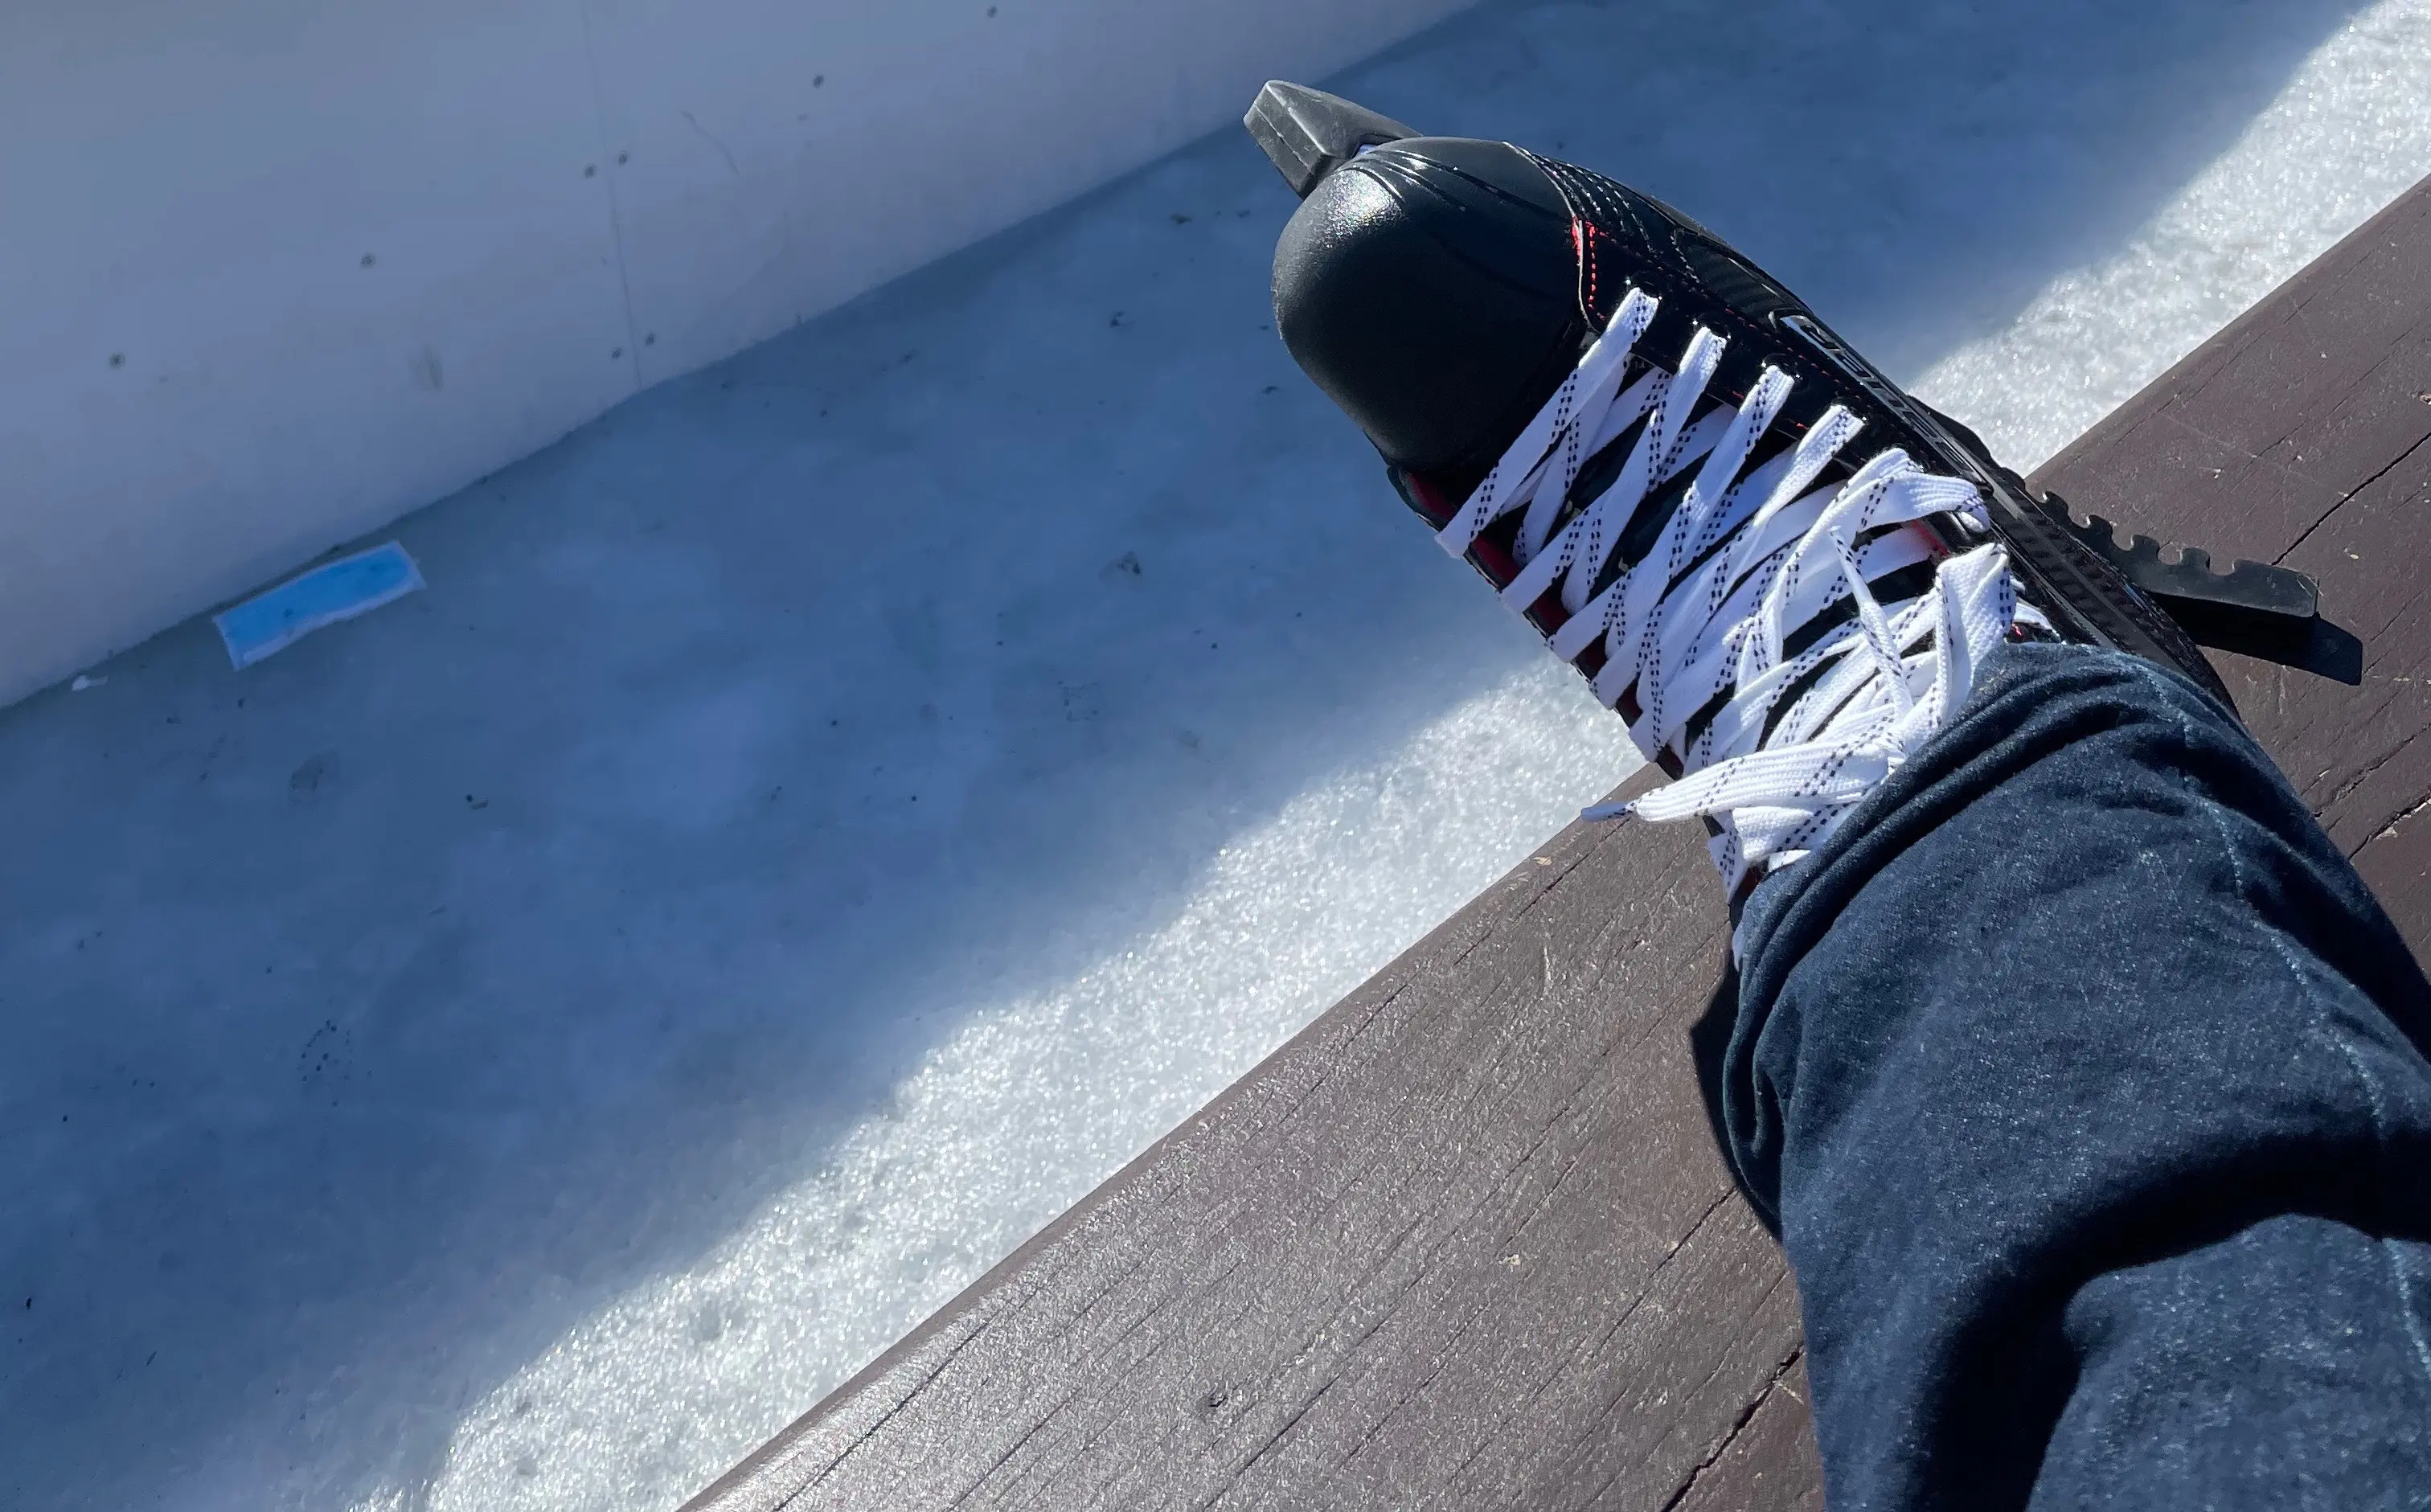 New ice skate